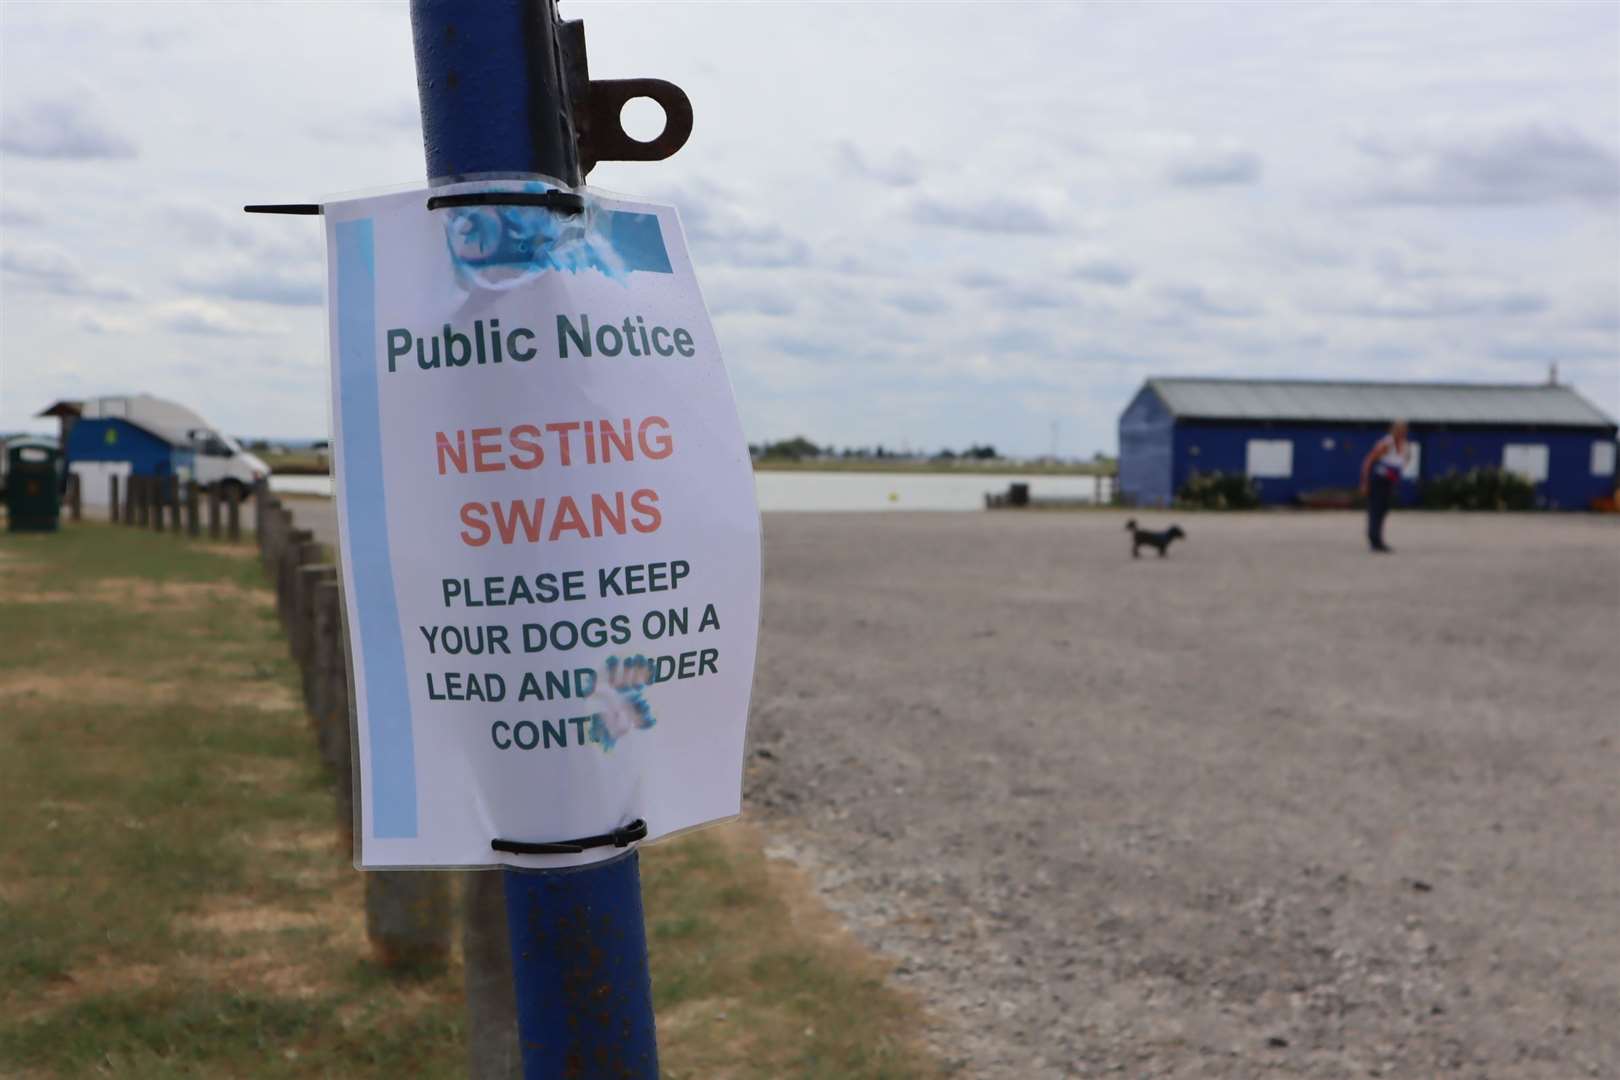 Nesting Swans warning sign at Barton's Point Coastal Park, Sheerness